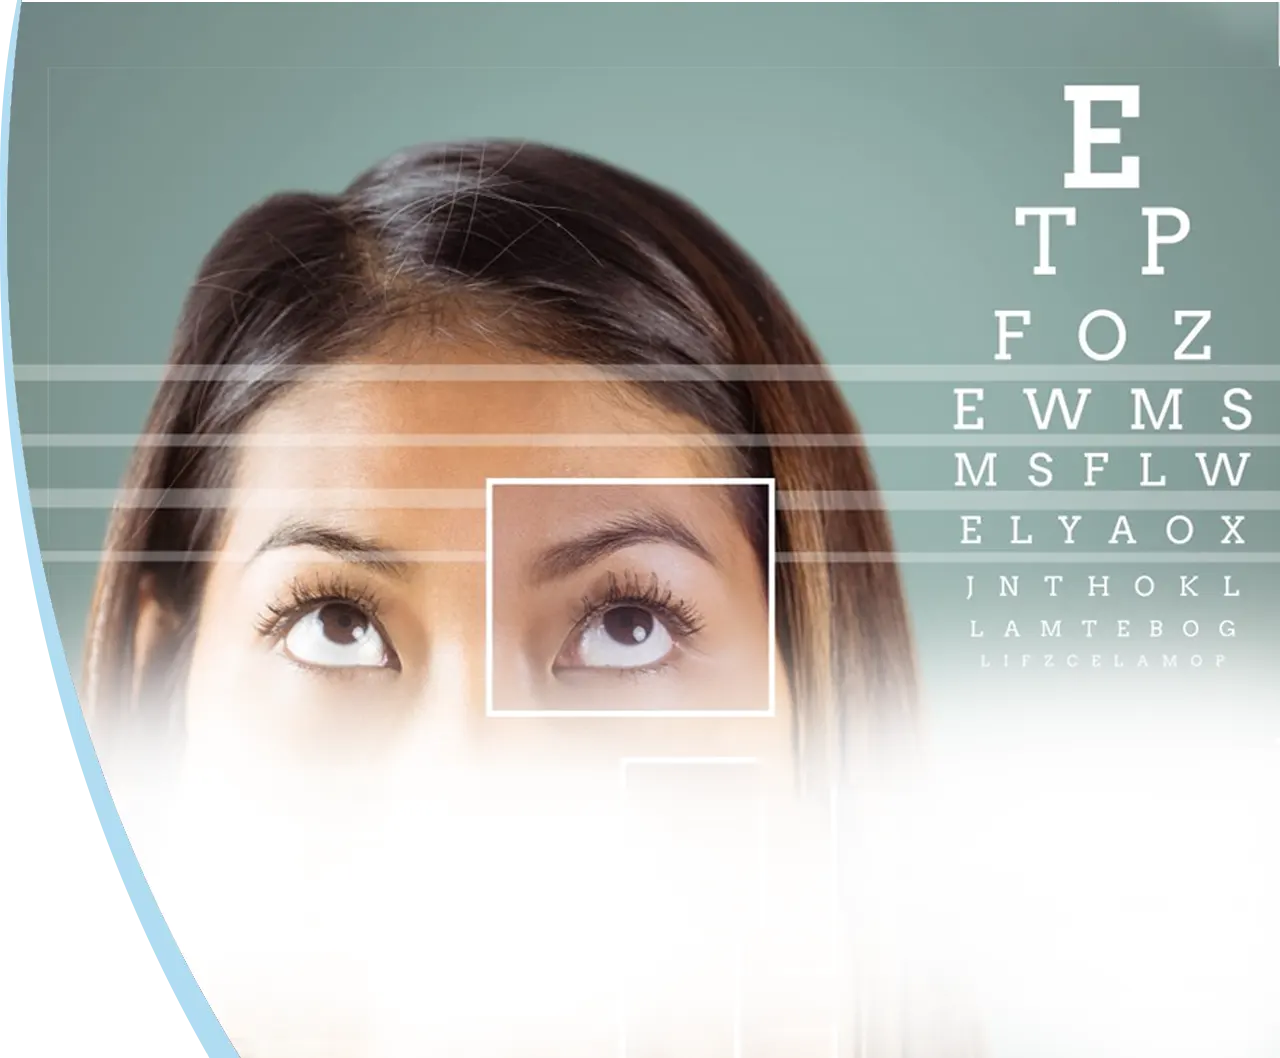 Tous les défauts optiques de la vue sont opérables avec les lasers cornéens ou les implants oculaires